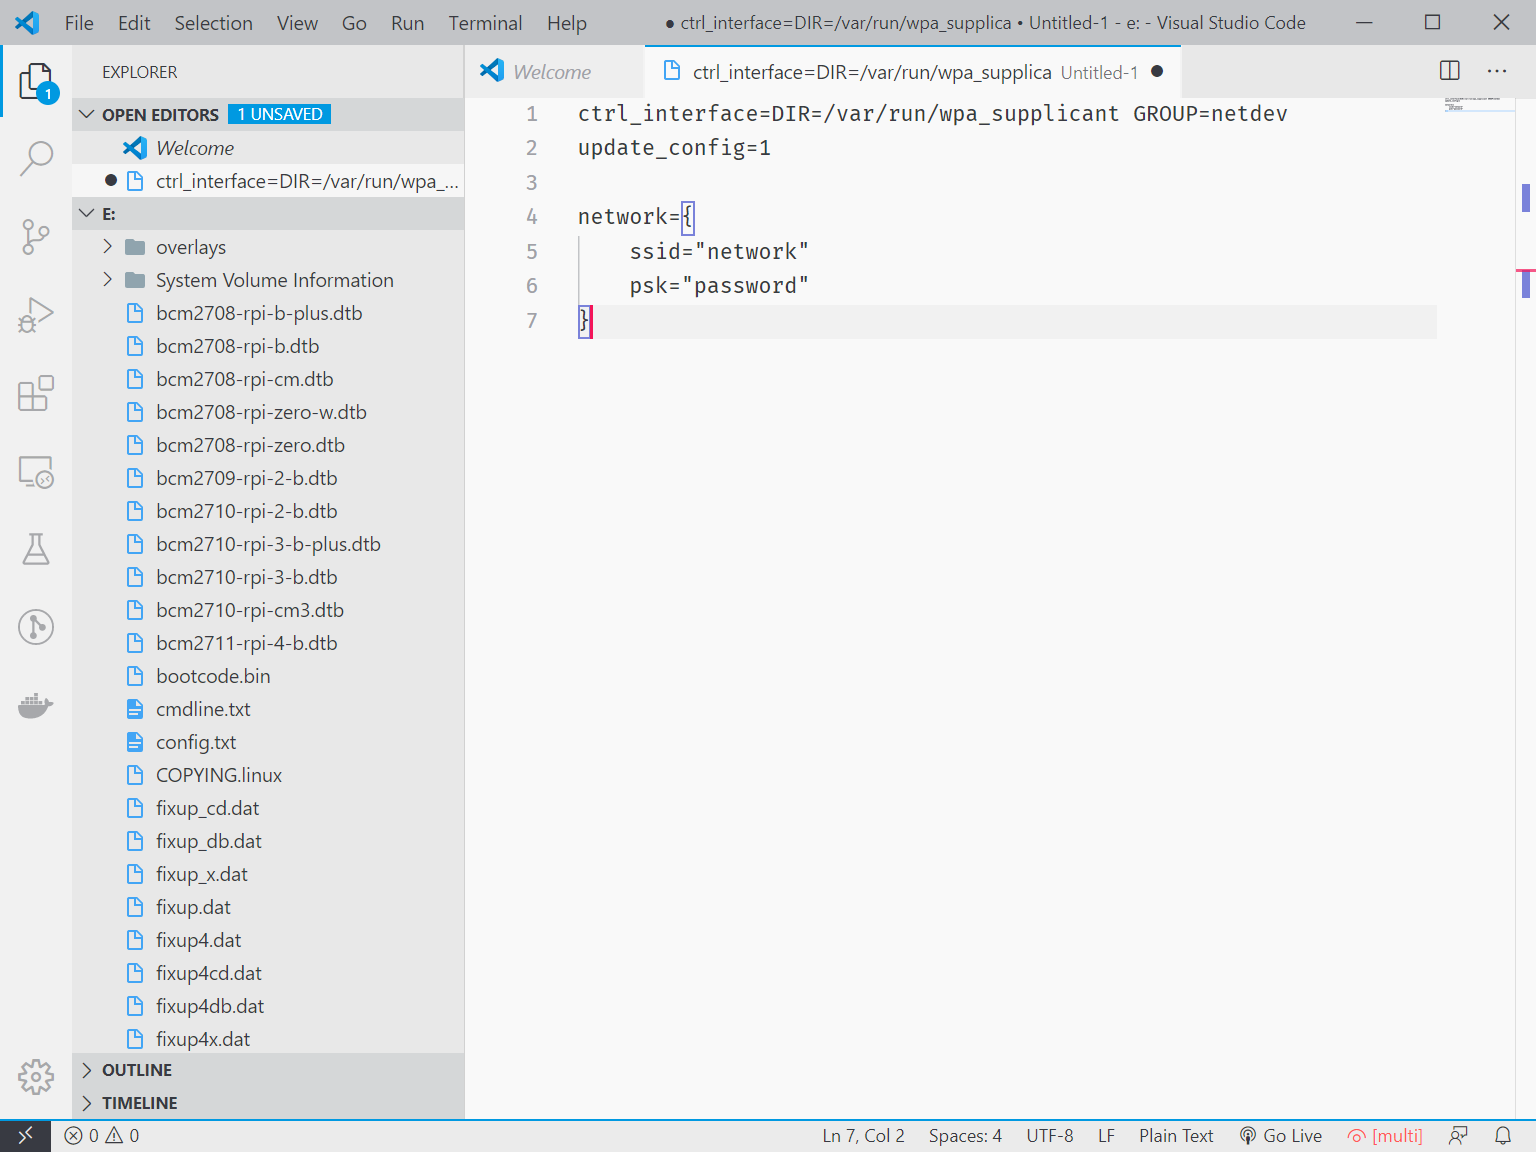 Visual Studio Code with 'wpa_supplicant.conf' open